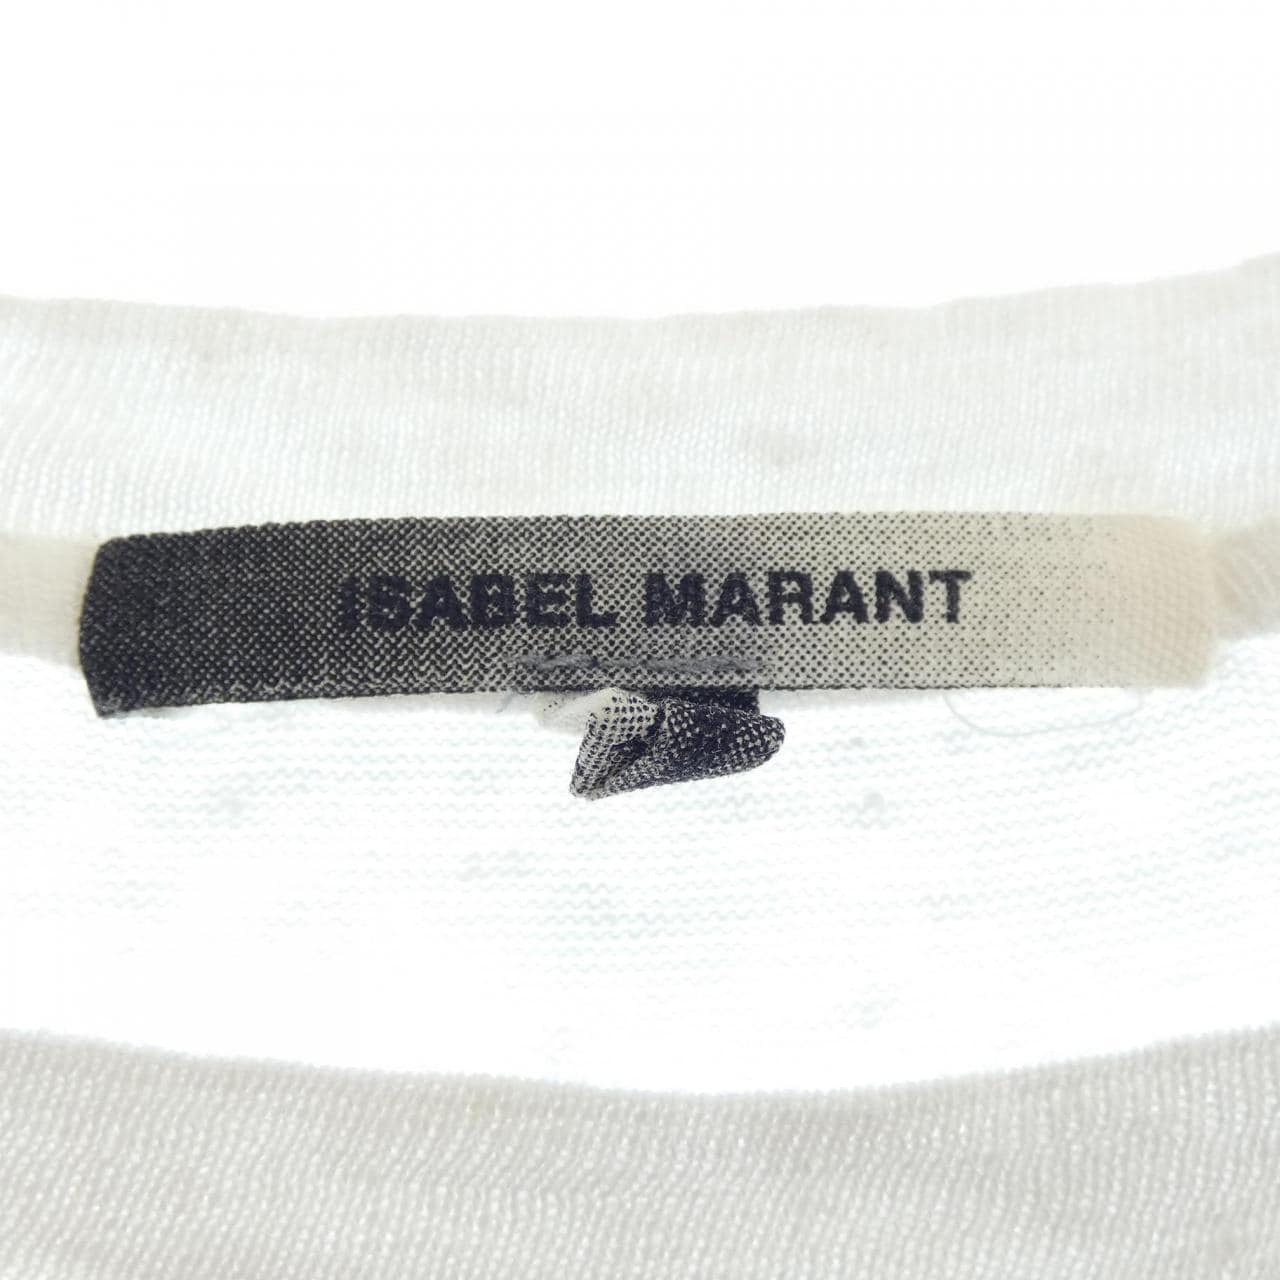 イザベルマラン ISABEL MARANT Tシャツ